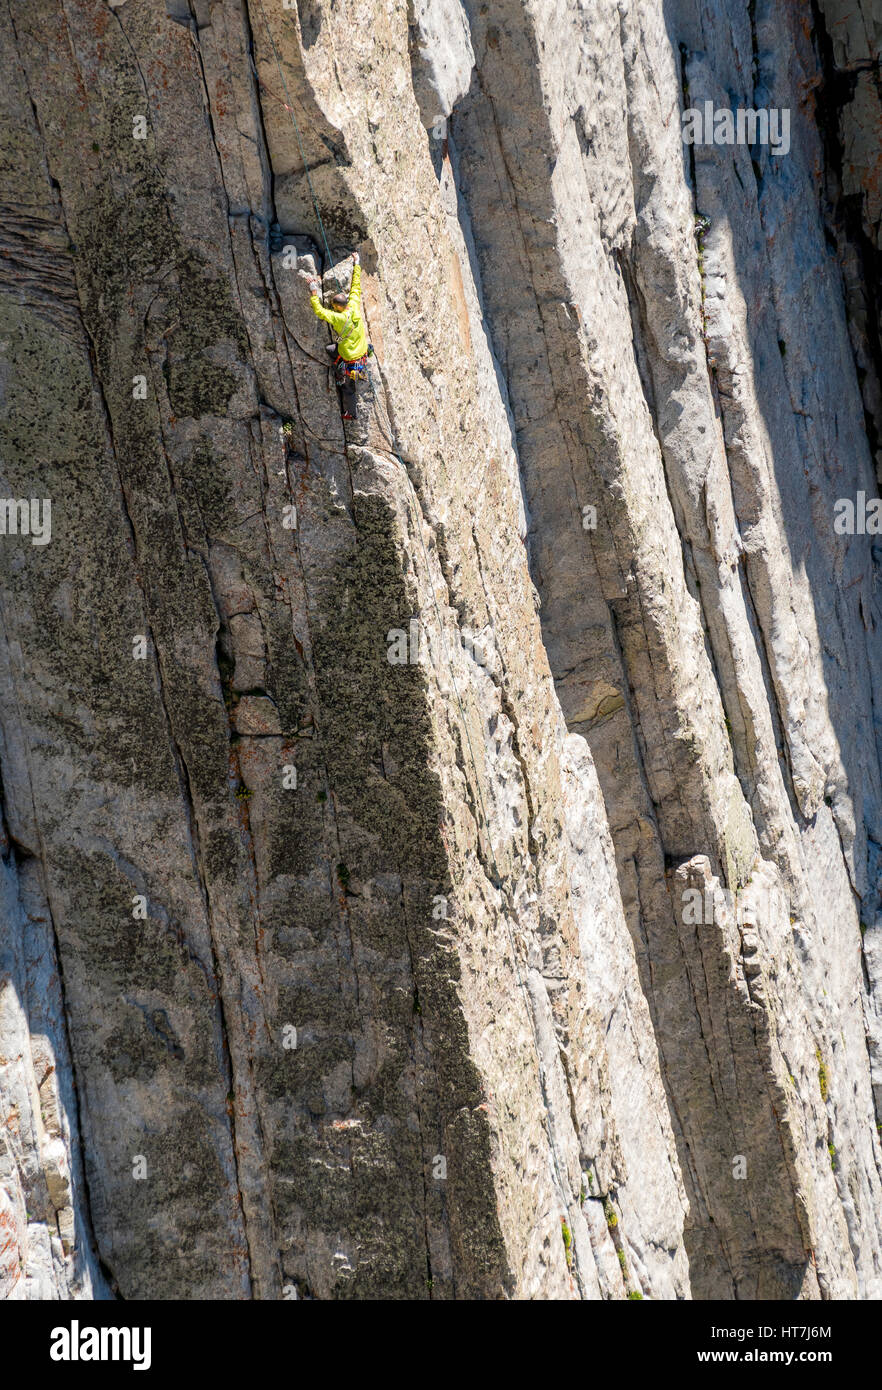 Ein Mann nach seinen Freunden auf einem Felsen klettern auf Utahs einsame Spitze arbeitet seinen Weg durch eine knifflige Bewegung Stockfoto